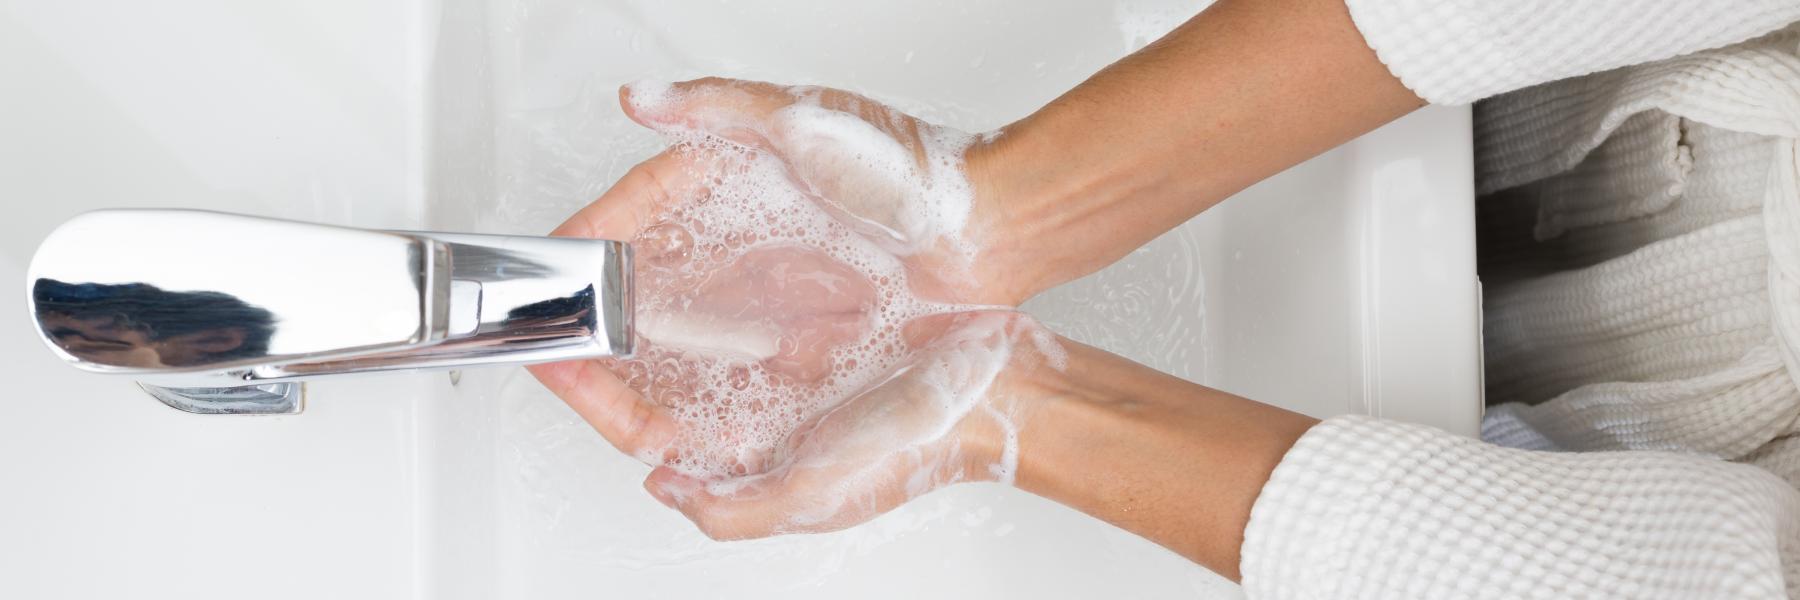 اليوم العالمي لغسل اليدين 2020: ما يجب فعله عند غسل اليدين وما لا يجب 